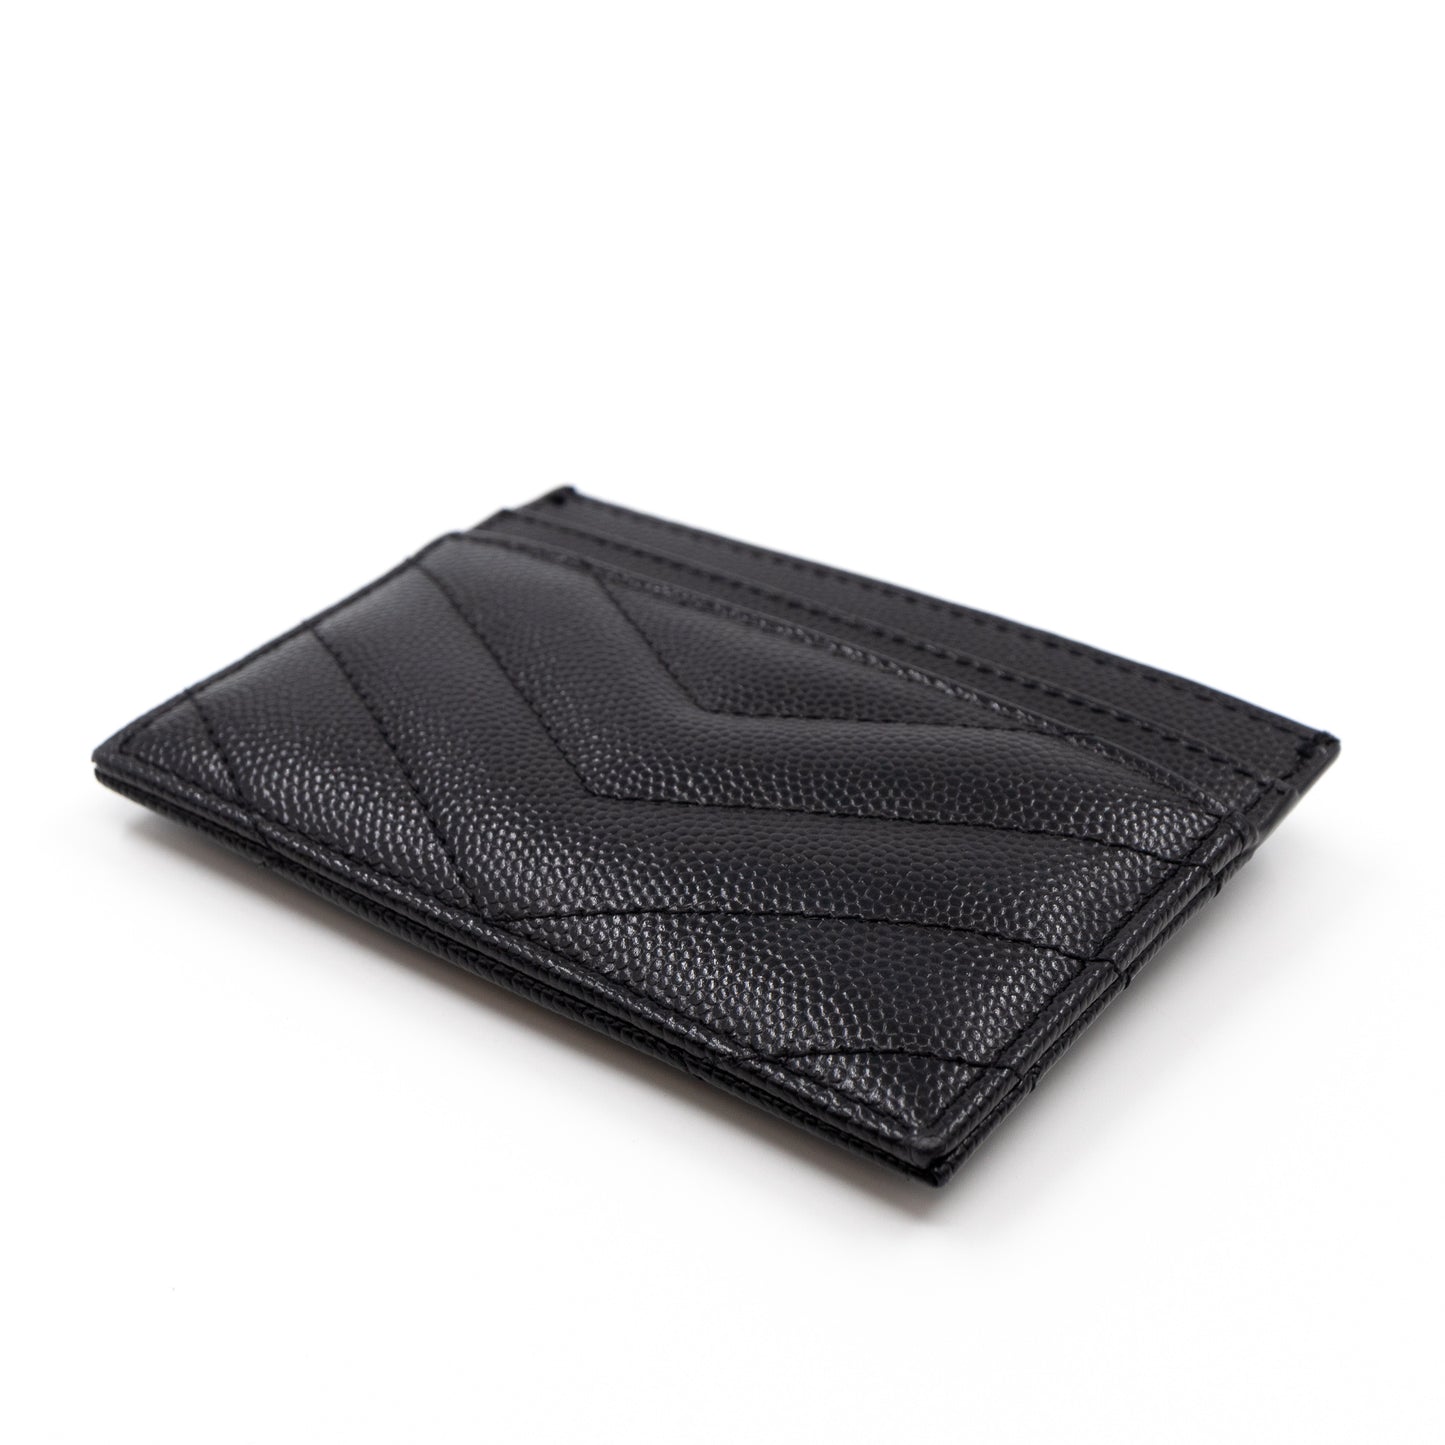 YSL Card Holder Black Leather